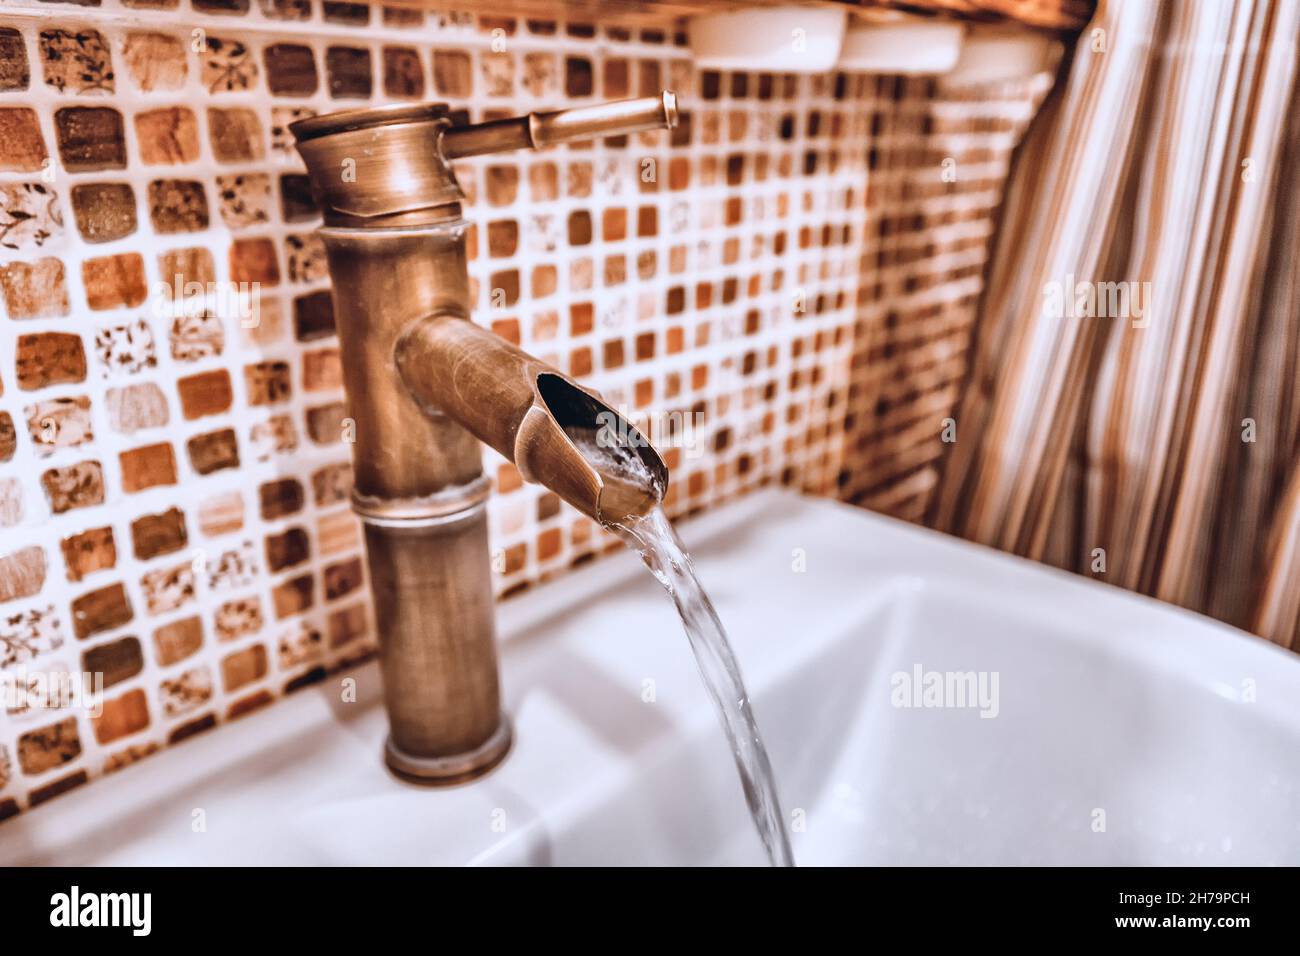 Un grifo de cobre creativo inusual en el cuarto de baño desde el que fluye una corriente de agua. El concepto de reparación y agua potable limpia Foto de stock